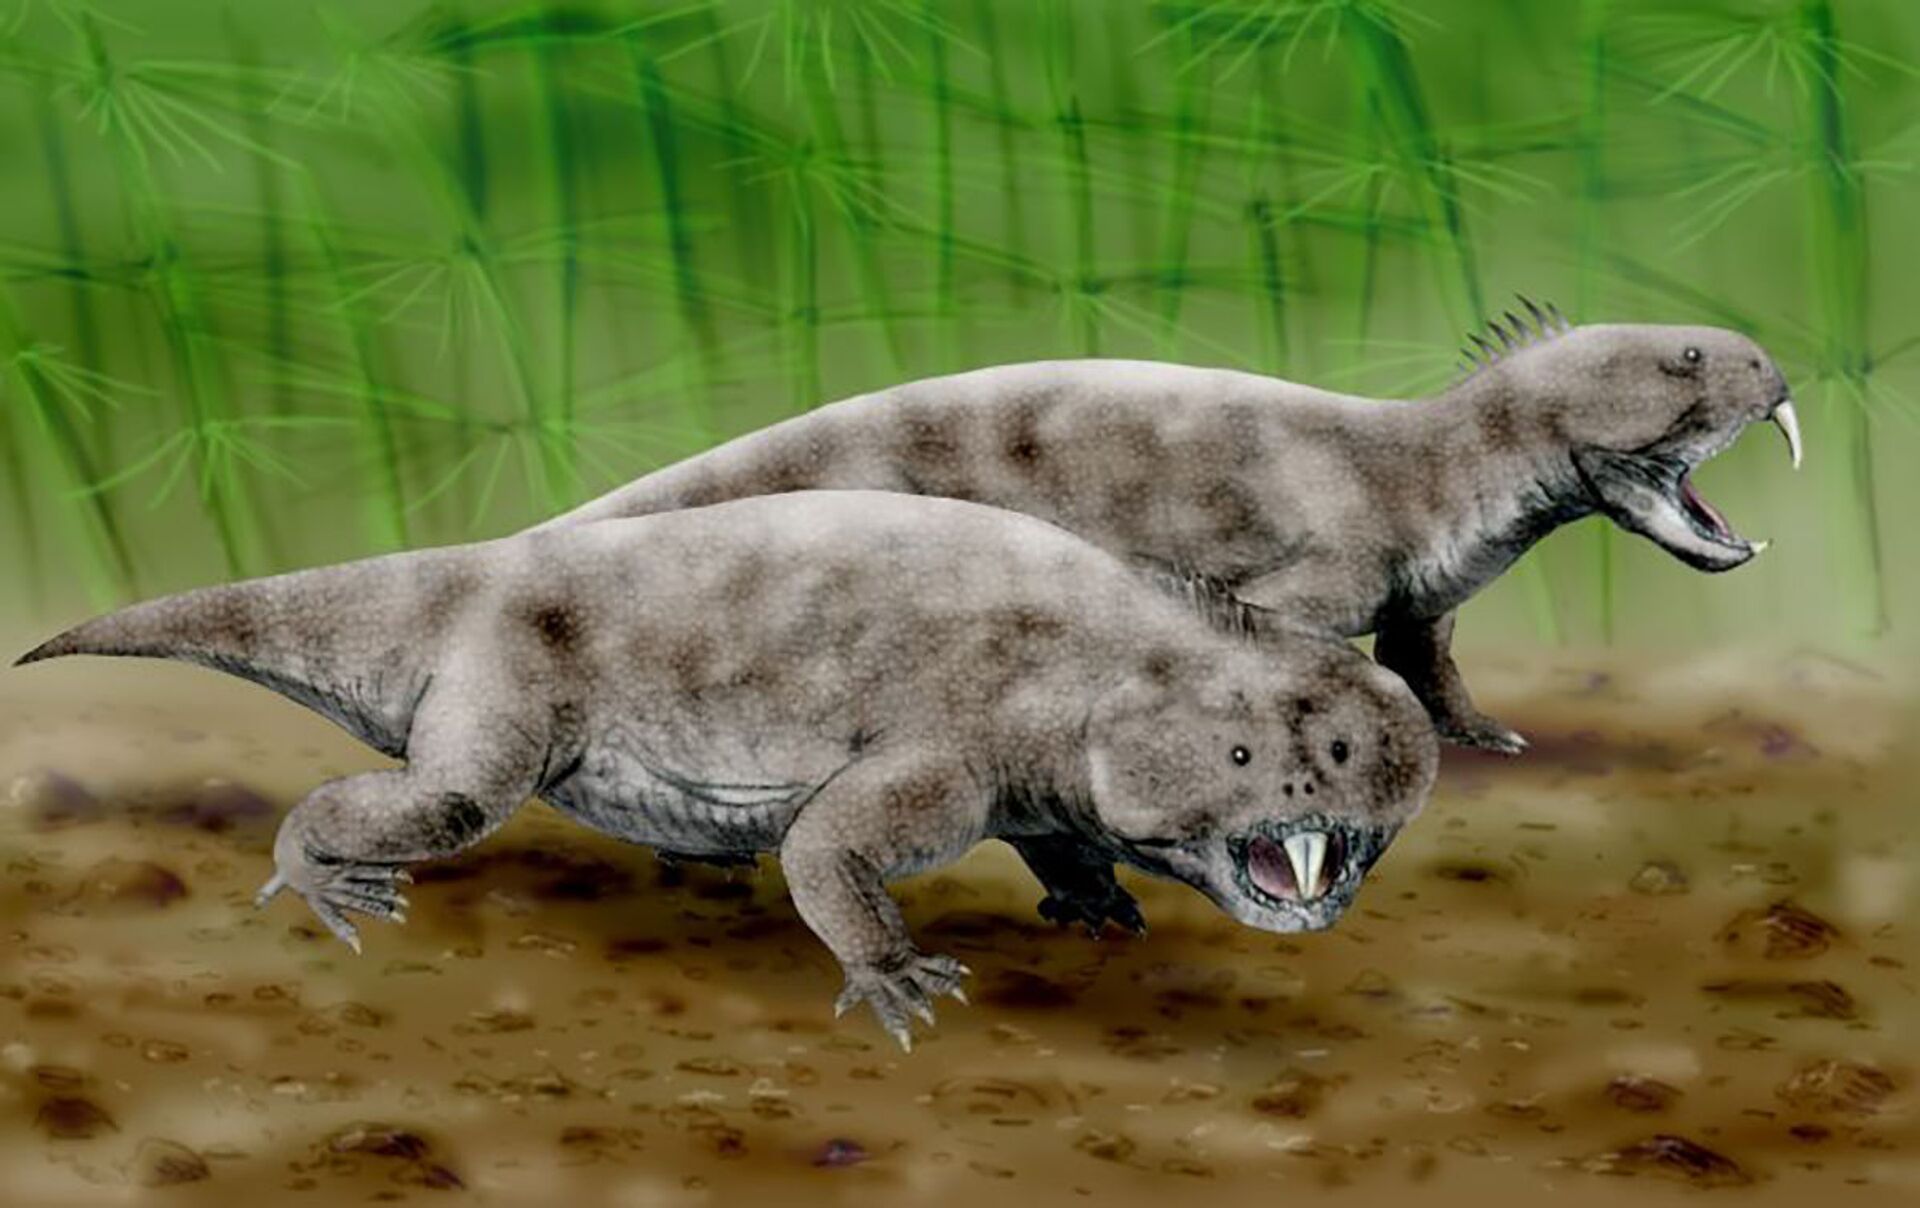 Vizinho de dinossauros: nova espécie extinta descoberta na Argentina - Sputnik Brasil, 1920, 16.02.2021